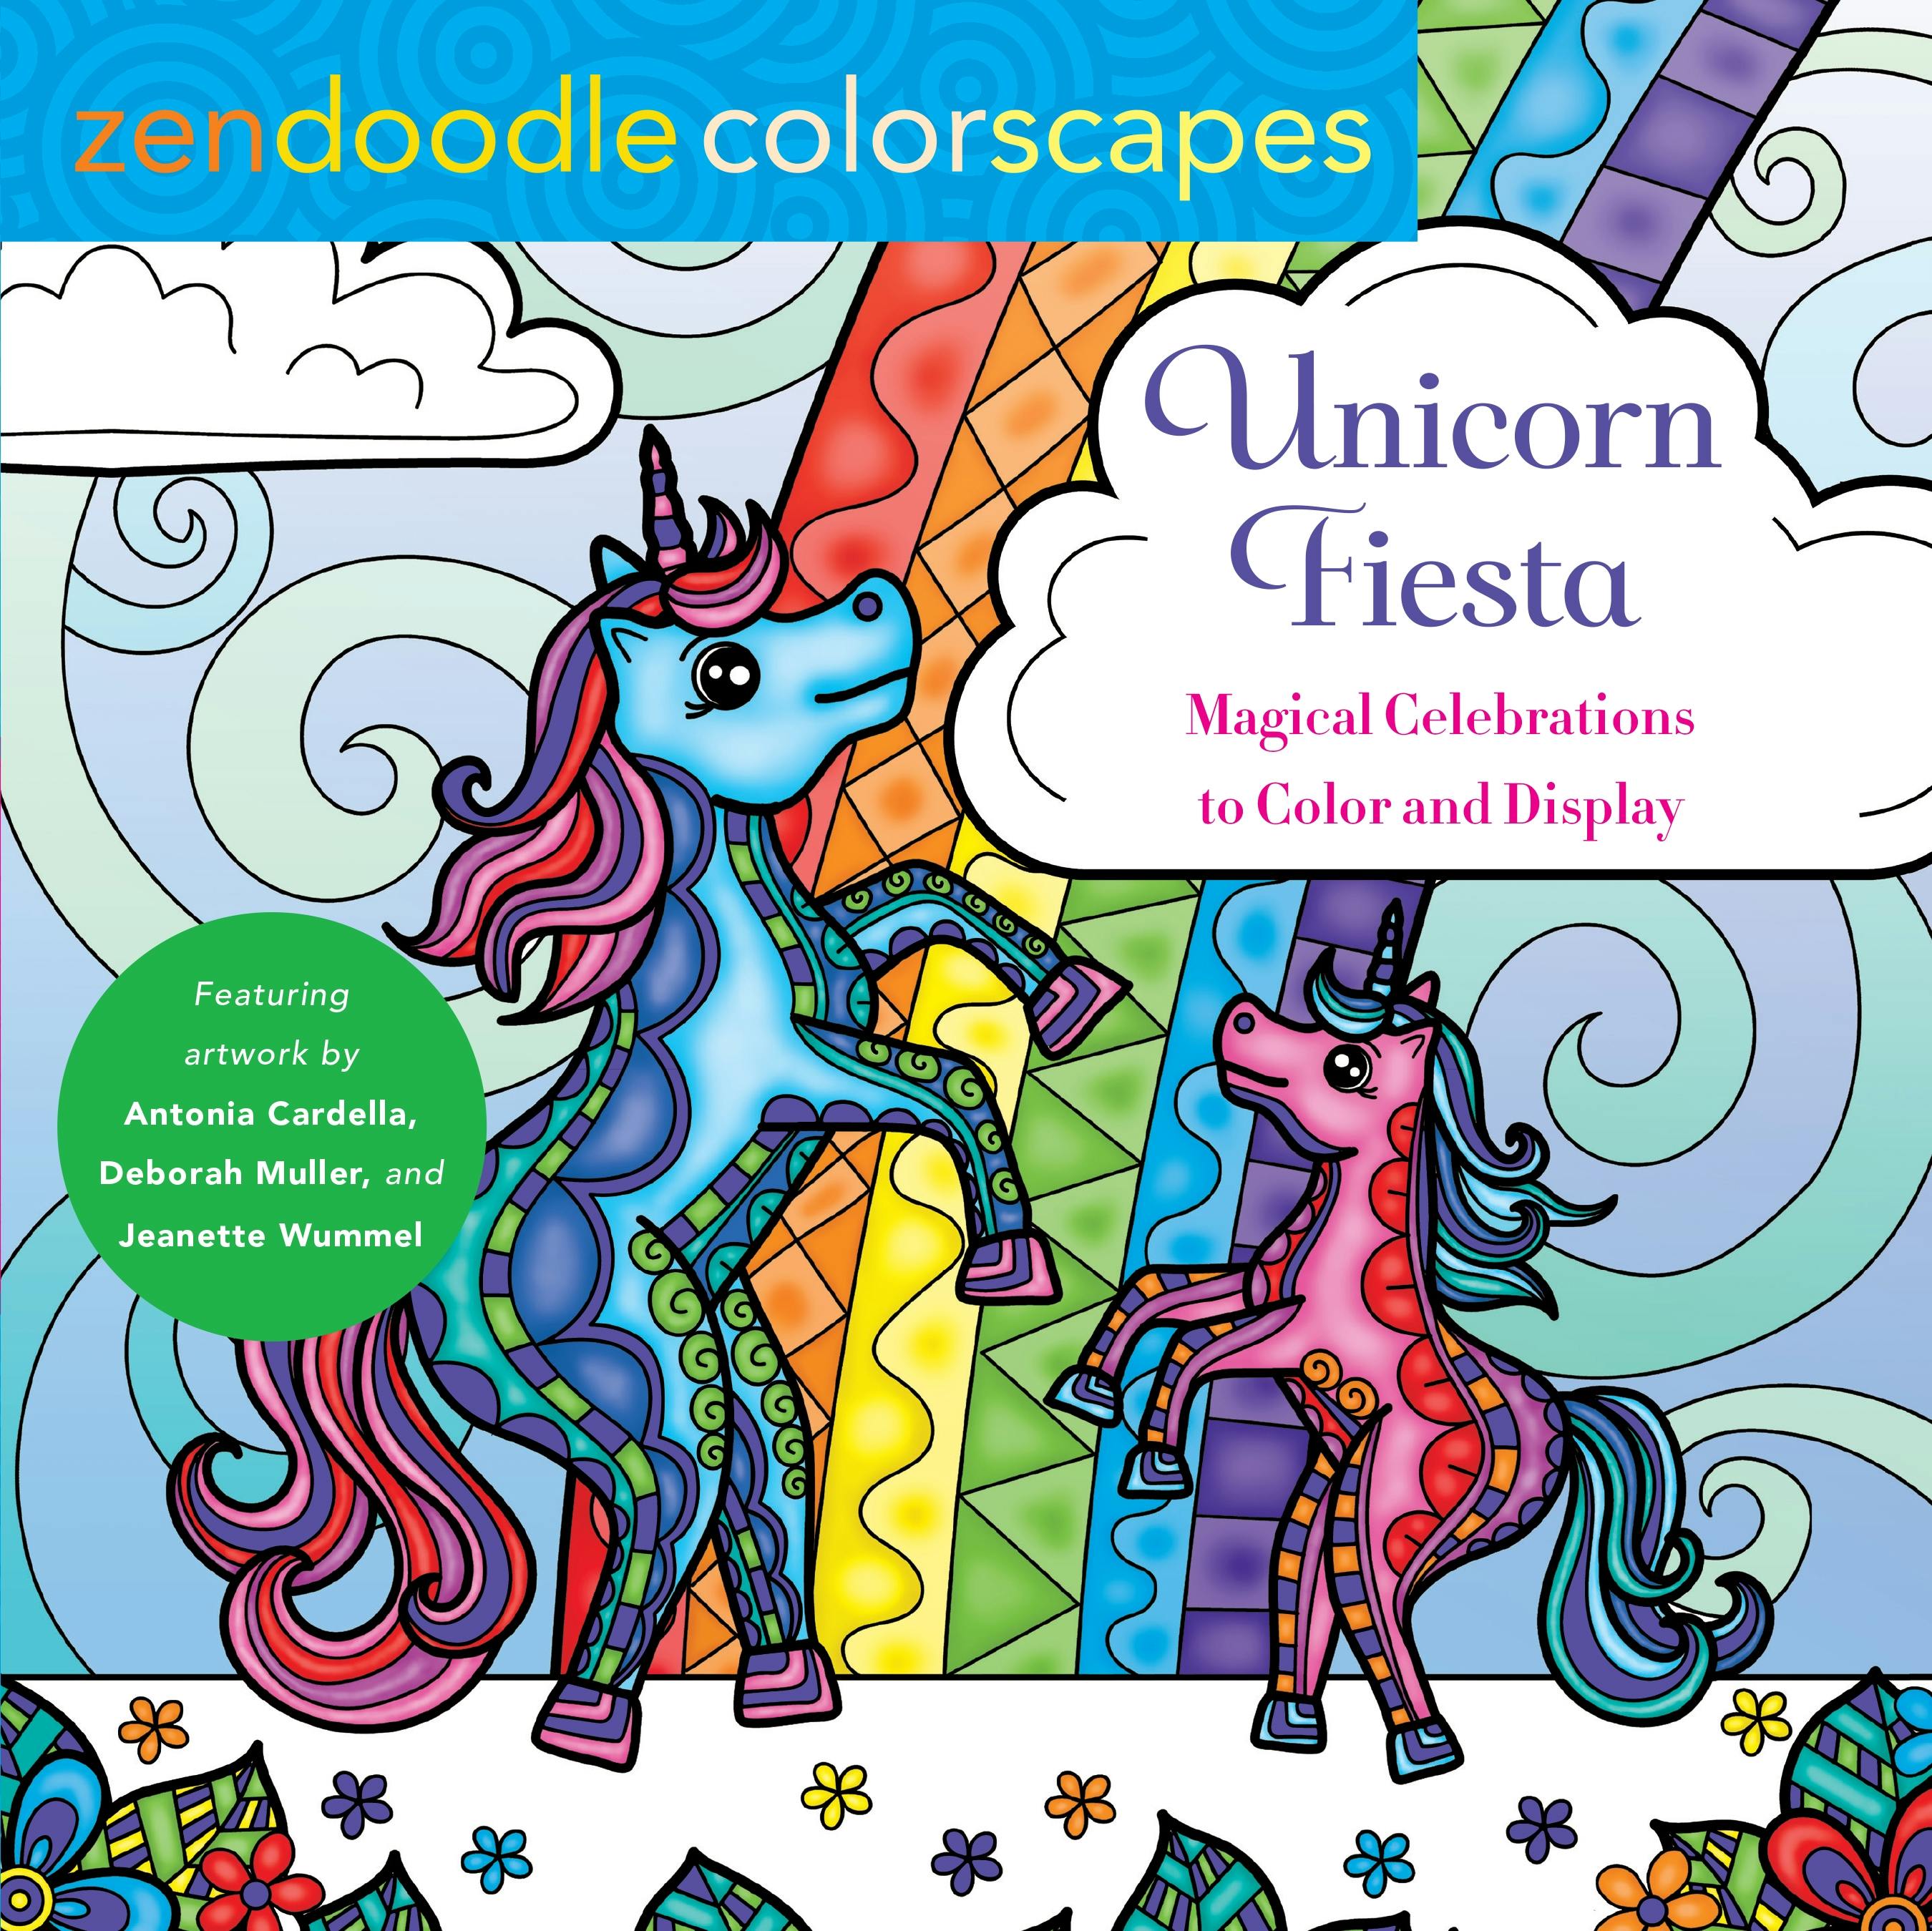 Zendoodle Colorscapes: Unicorn Fiesta